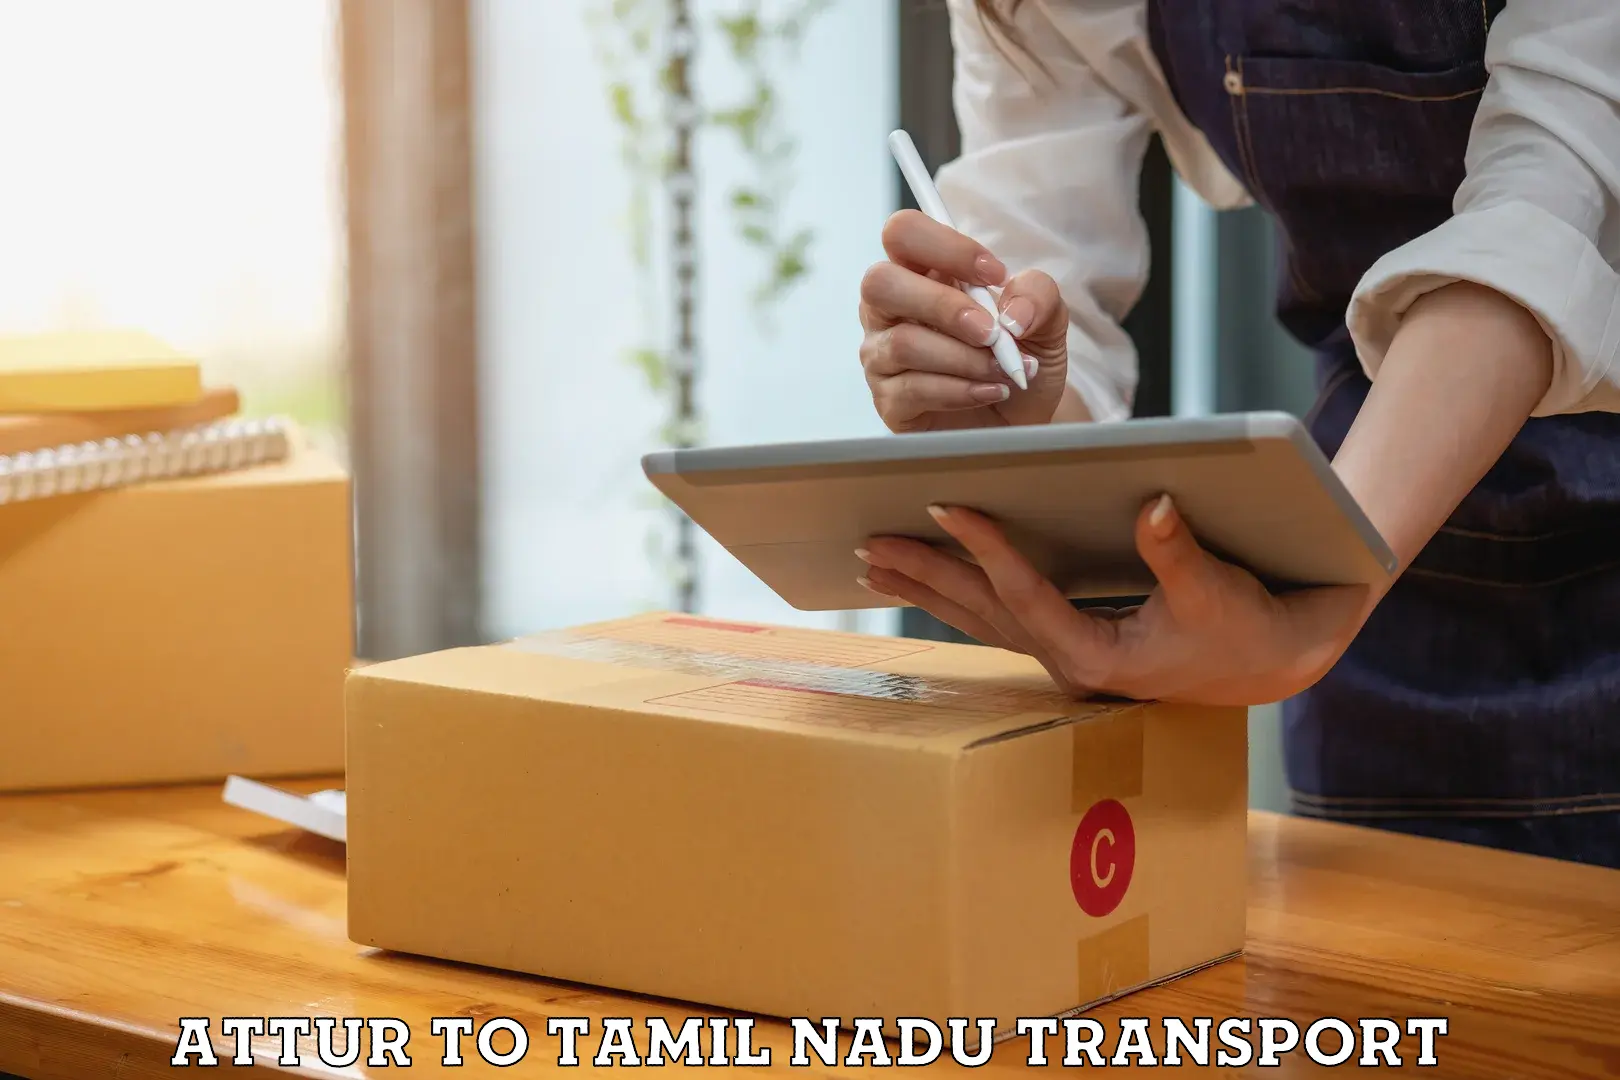 Delivery service Attur to Gujiliamparai